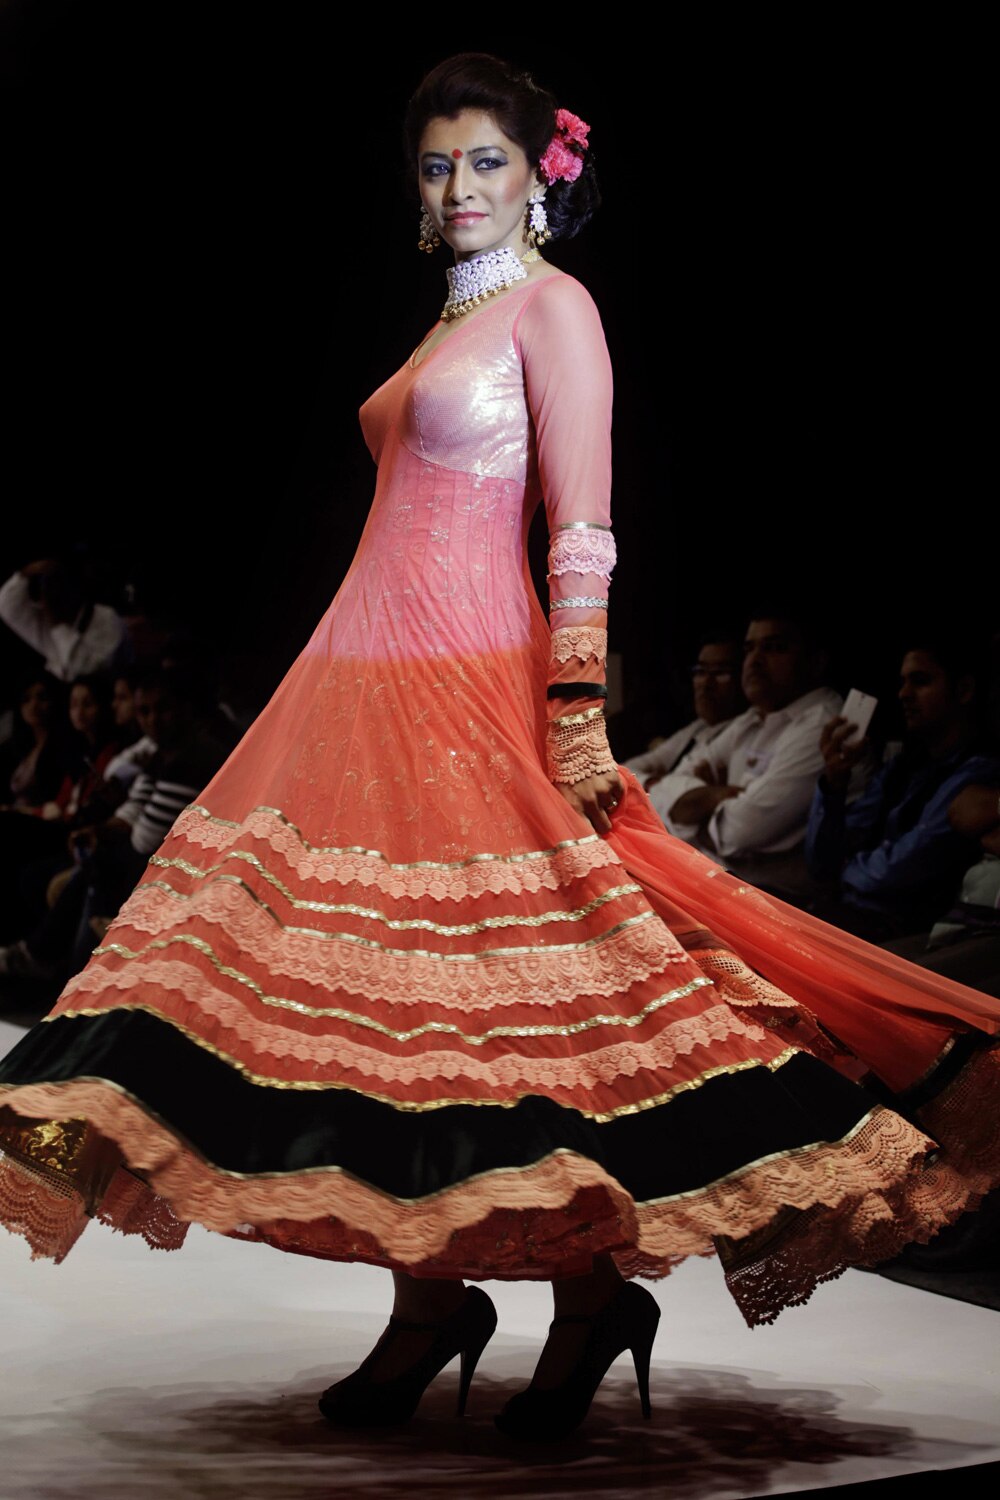 अहमदाबाद येथील भारतीय दागिने आणि फॅशन वीक मध्ये डिझायनर सुमीत दासगुप्ताचे क्रिएशन दाखवतांना मॉडेल